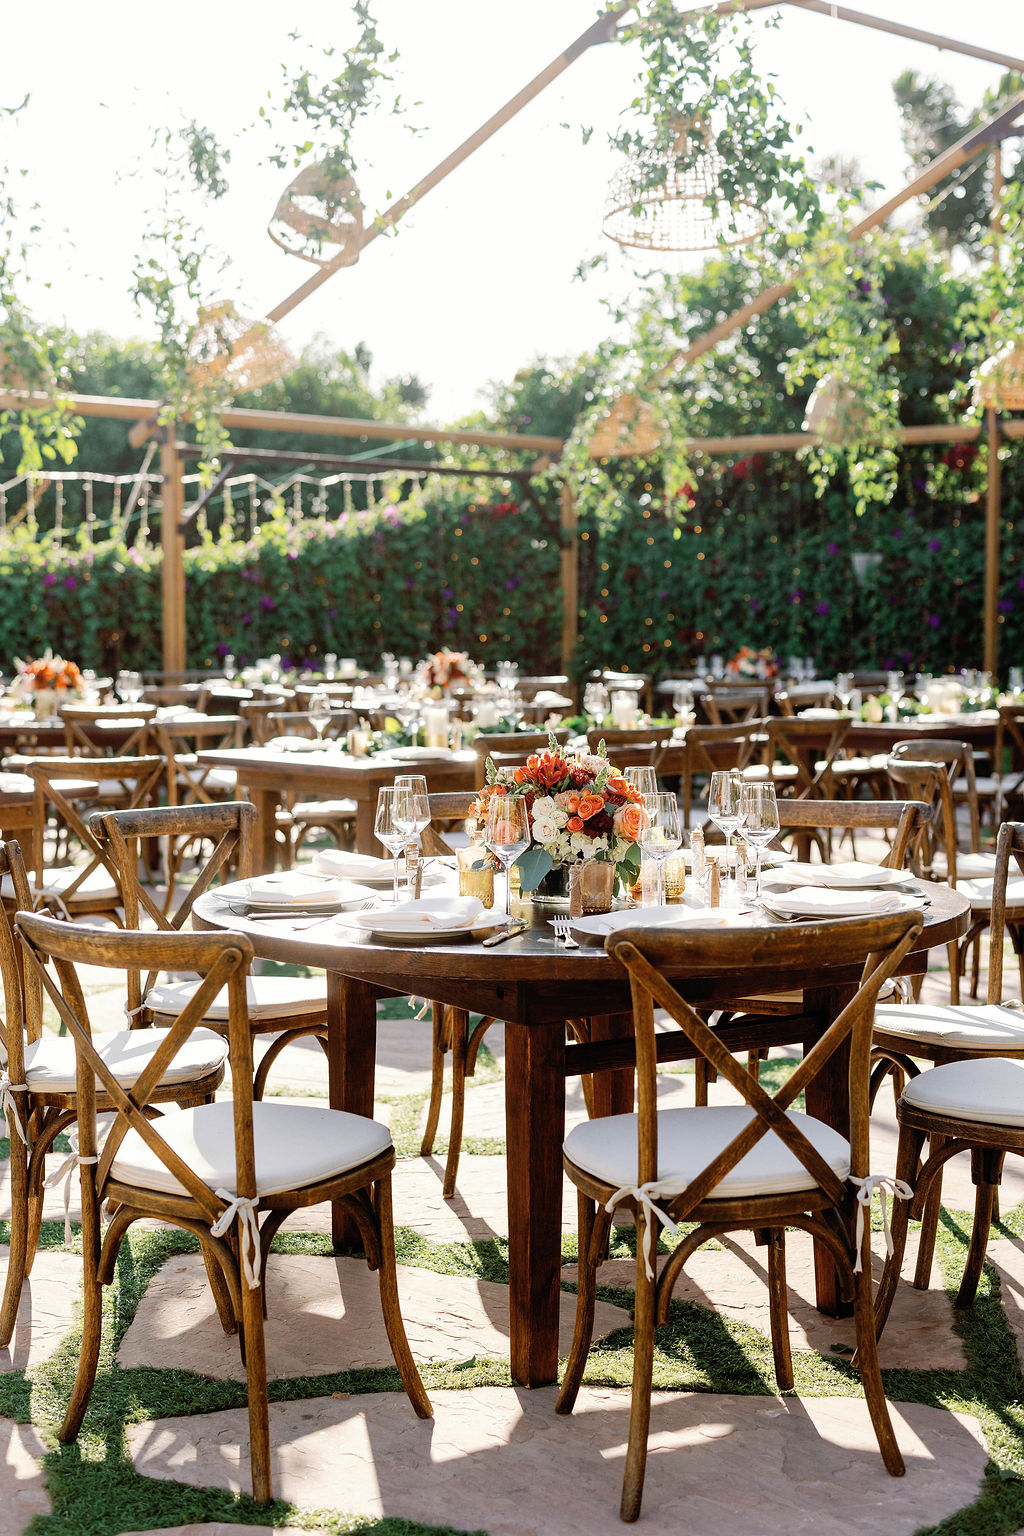 Guest tables at Mission Santa Barbara wedding | Photo by Sarah Block Photography